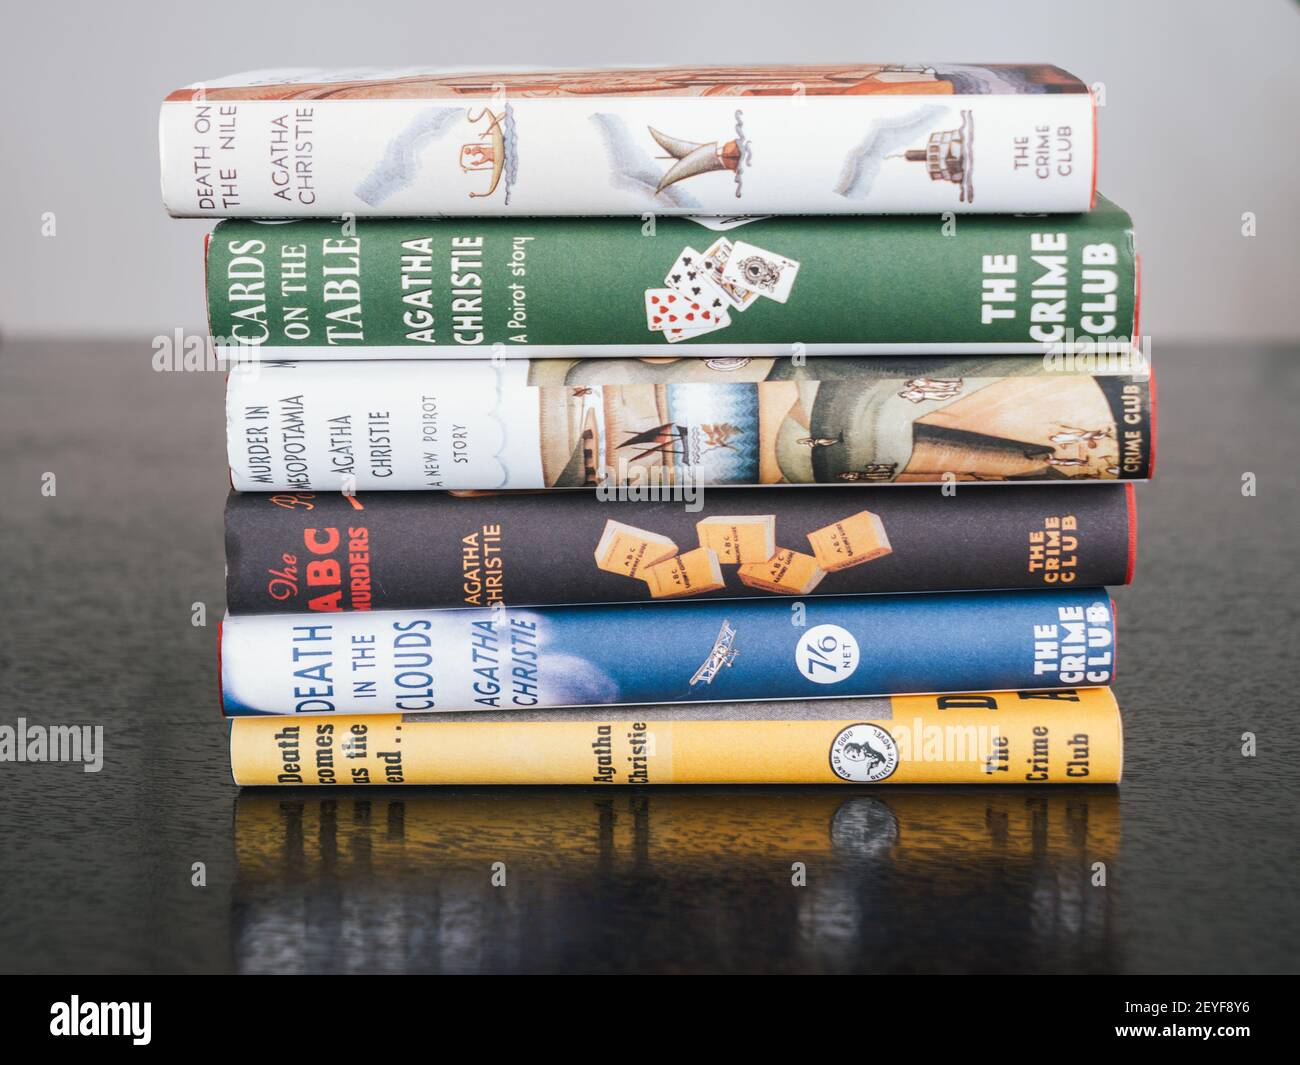 Londres, Angleterre, Royaume-Uni - 2 janvier 2021 : pile de divers romans de détective ou de crime d'Agatha Christie, pile de Fiction Books avec couvertures vintage. Banque D'Images